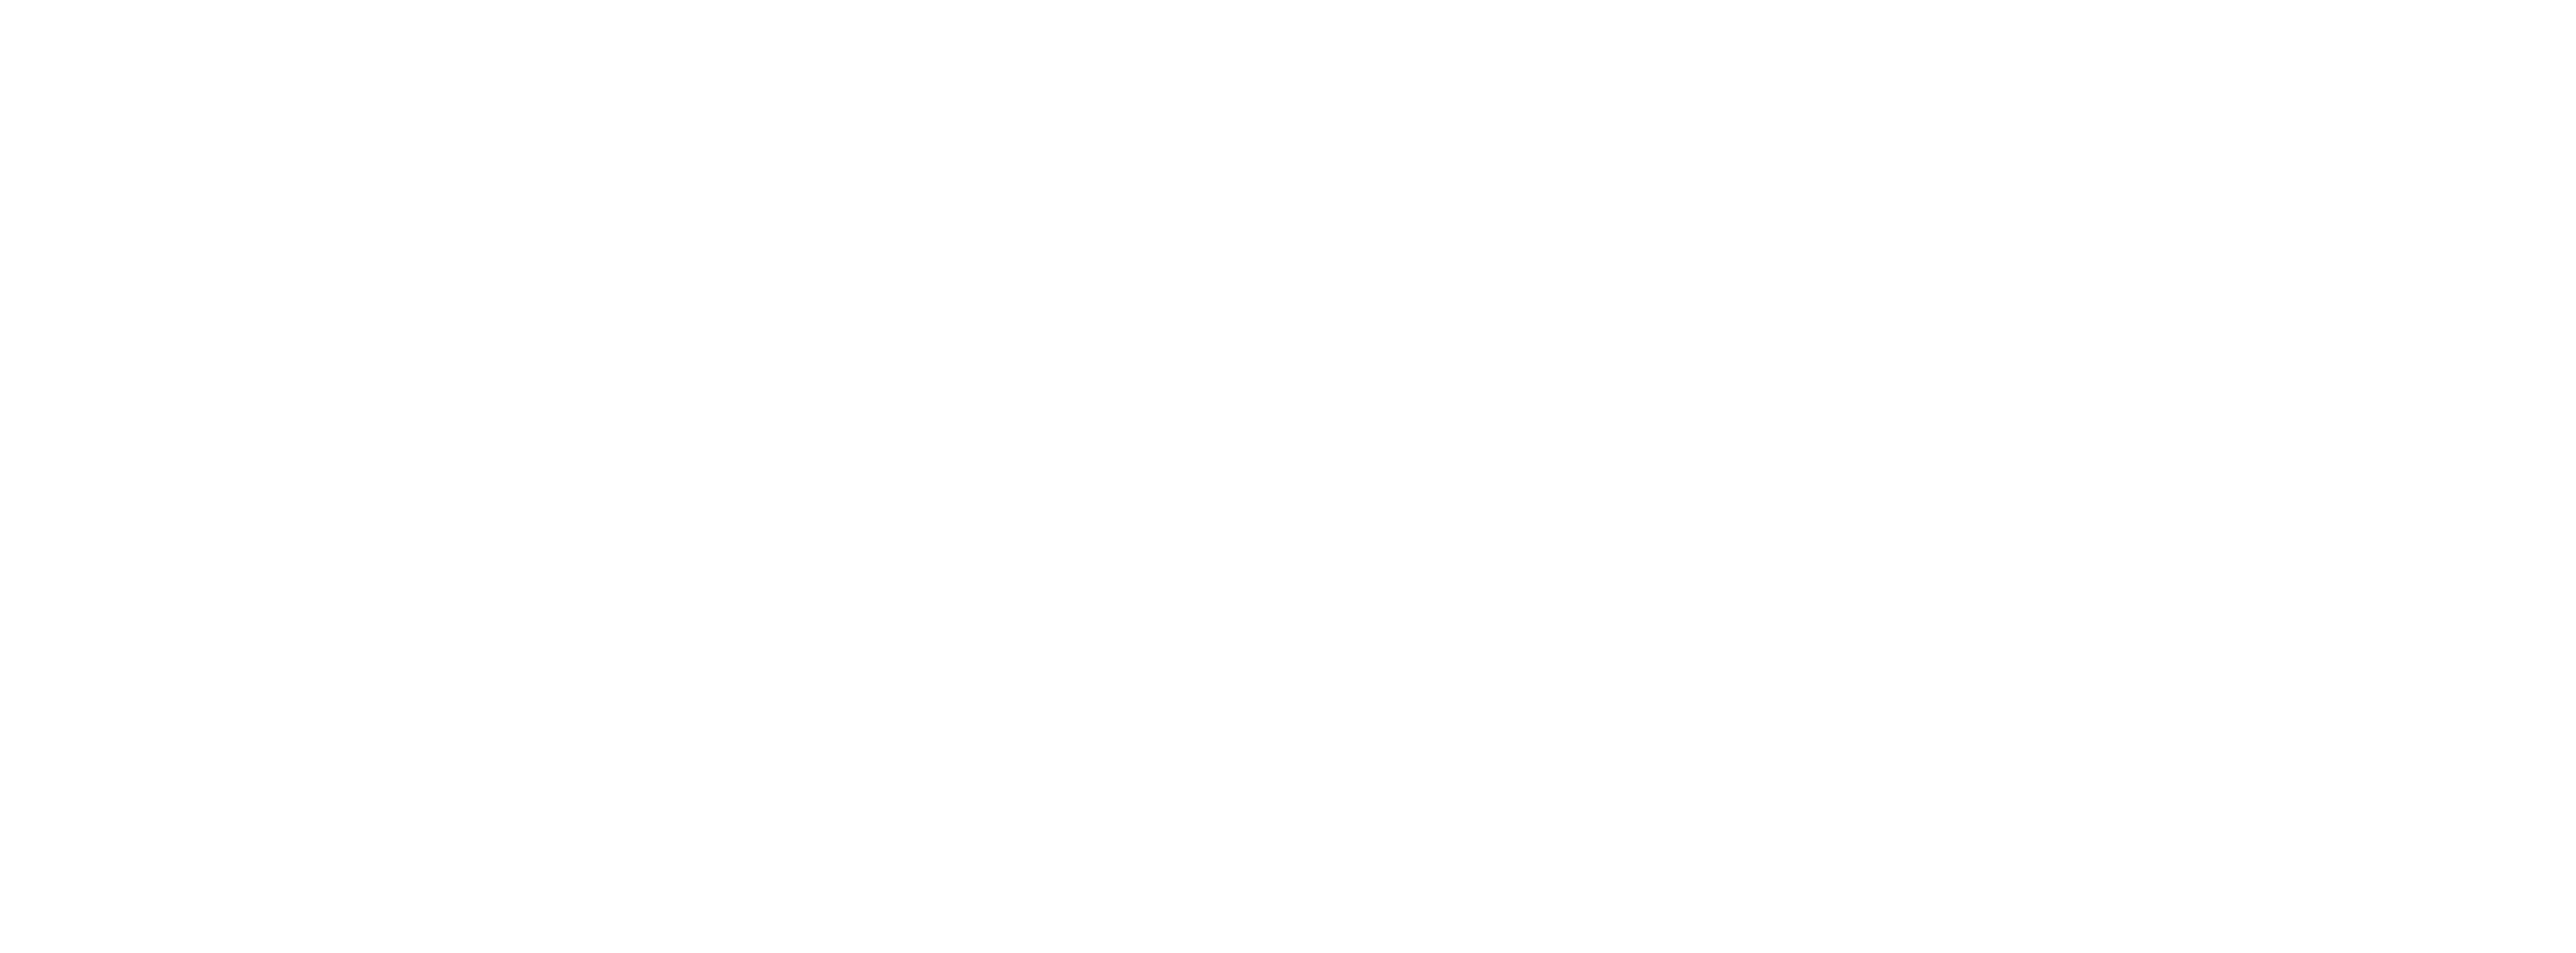 Yodify